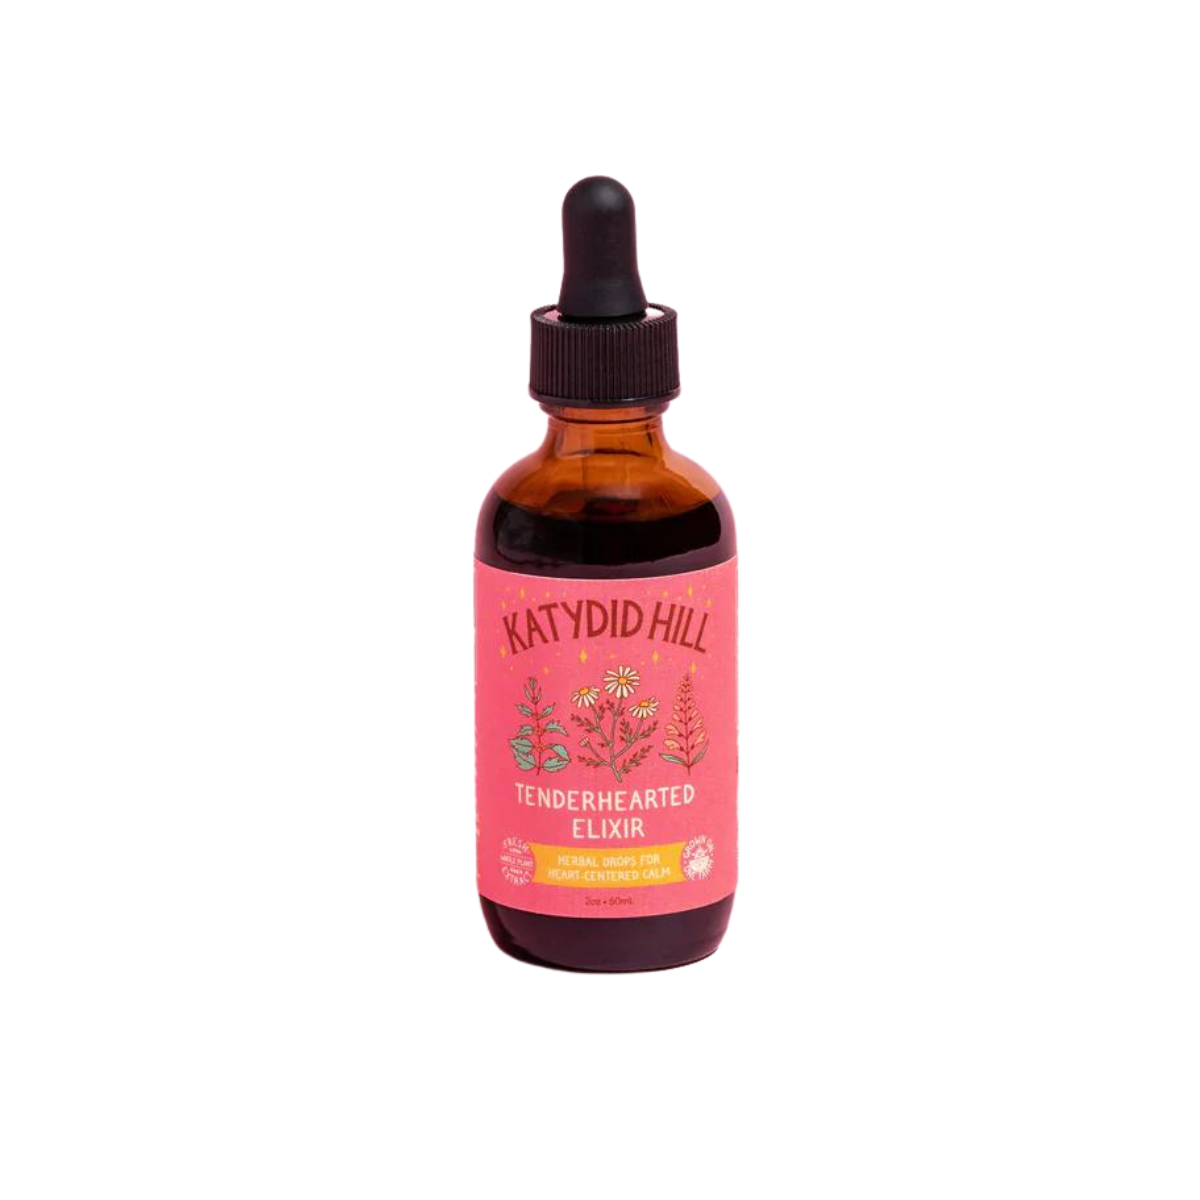 Katydid Hill Farm Tenderhearted Elixir - Herbal Drops For Heart Centered Calm